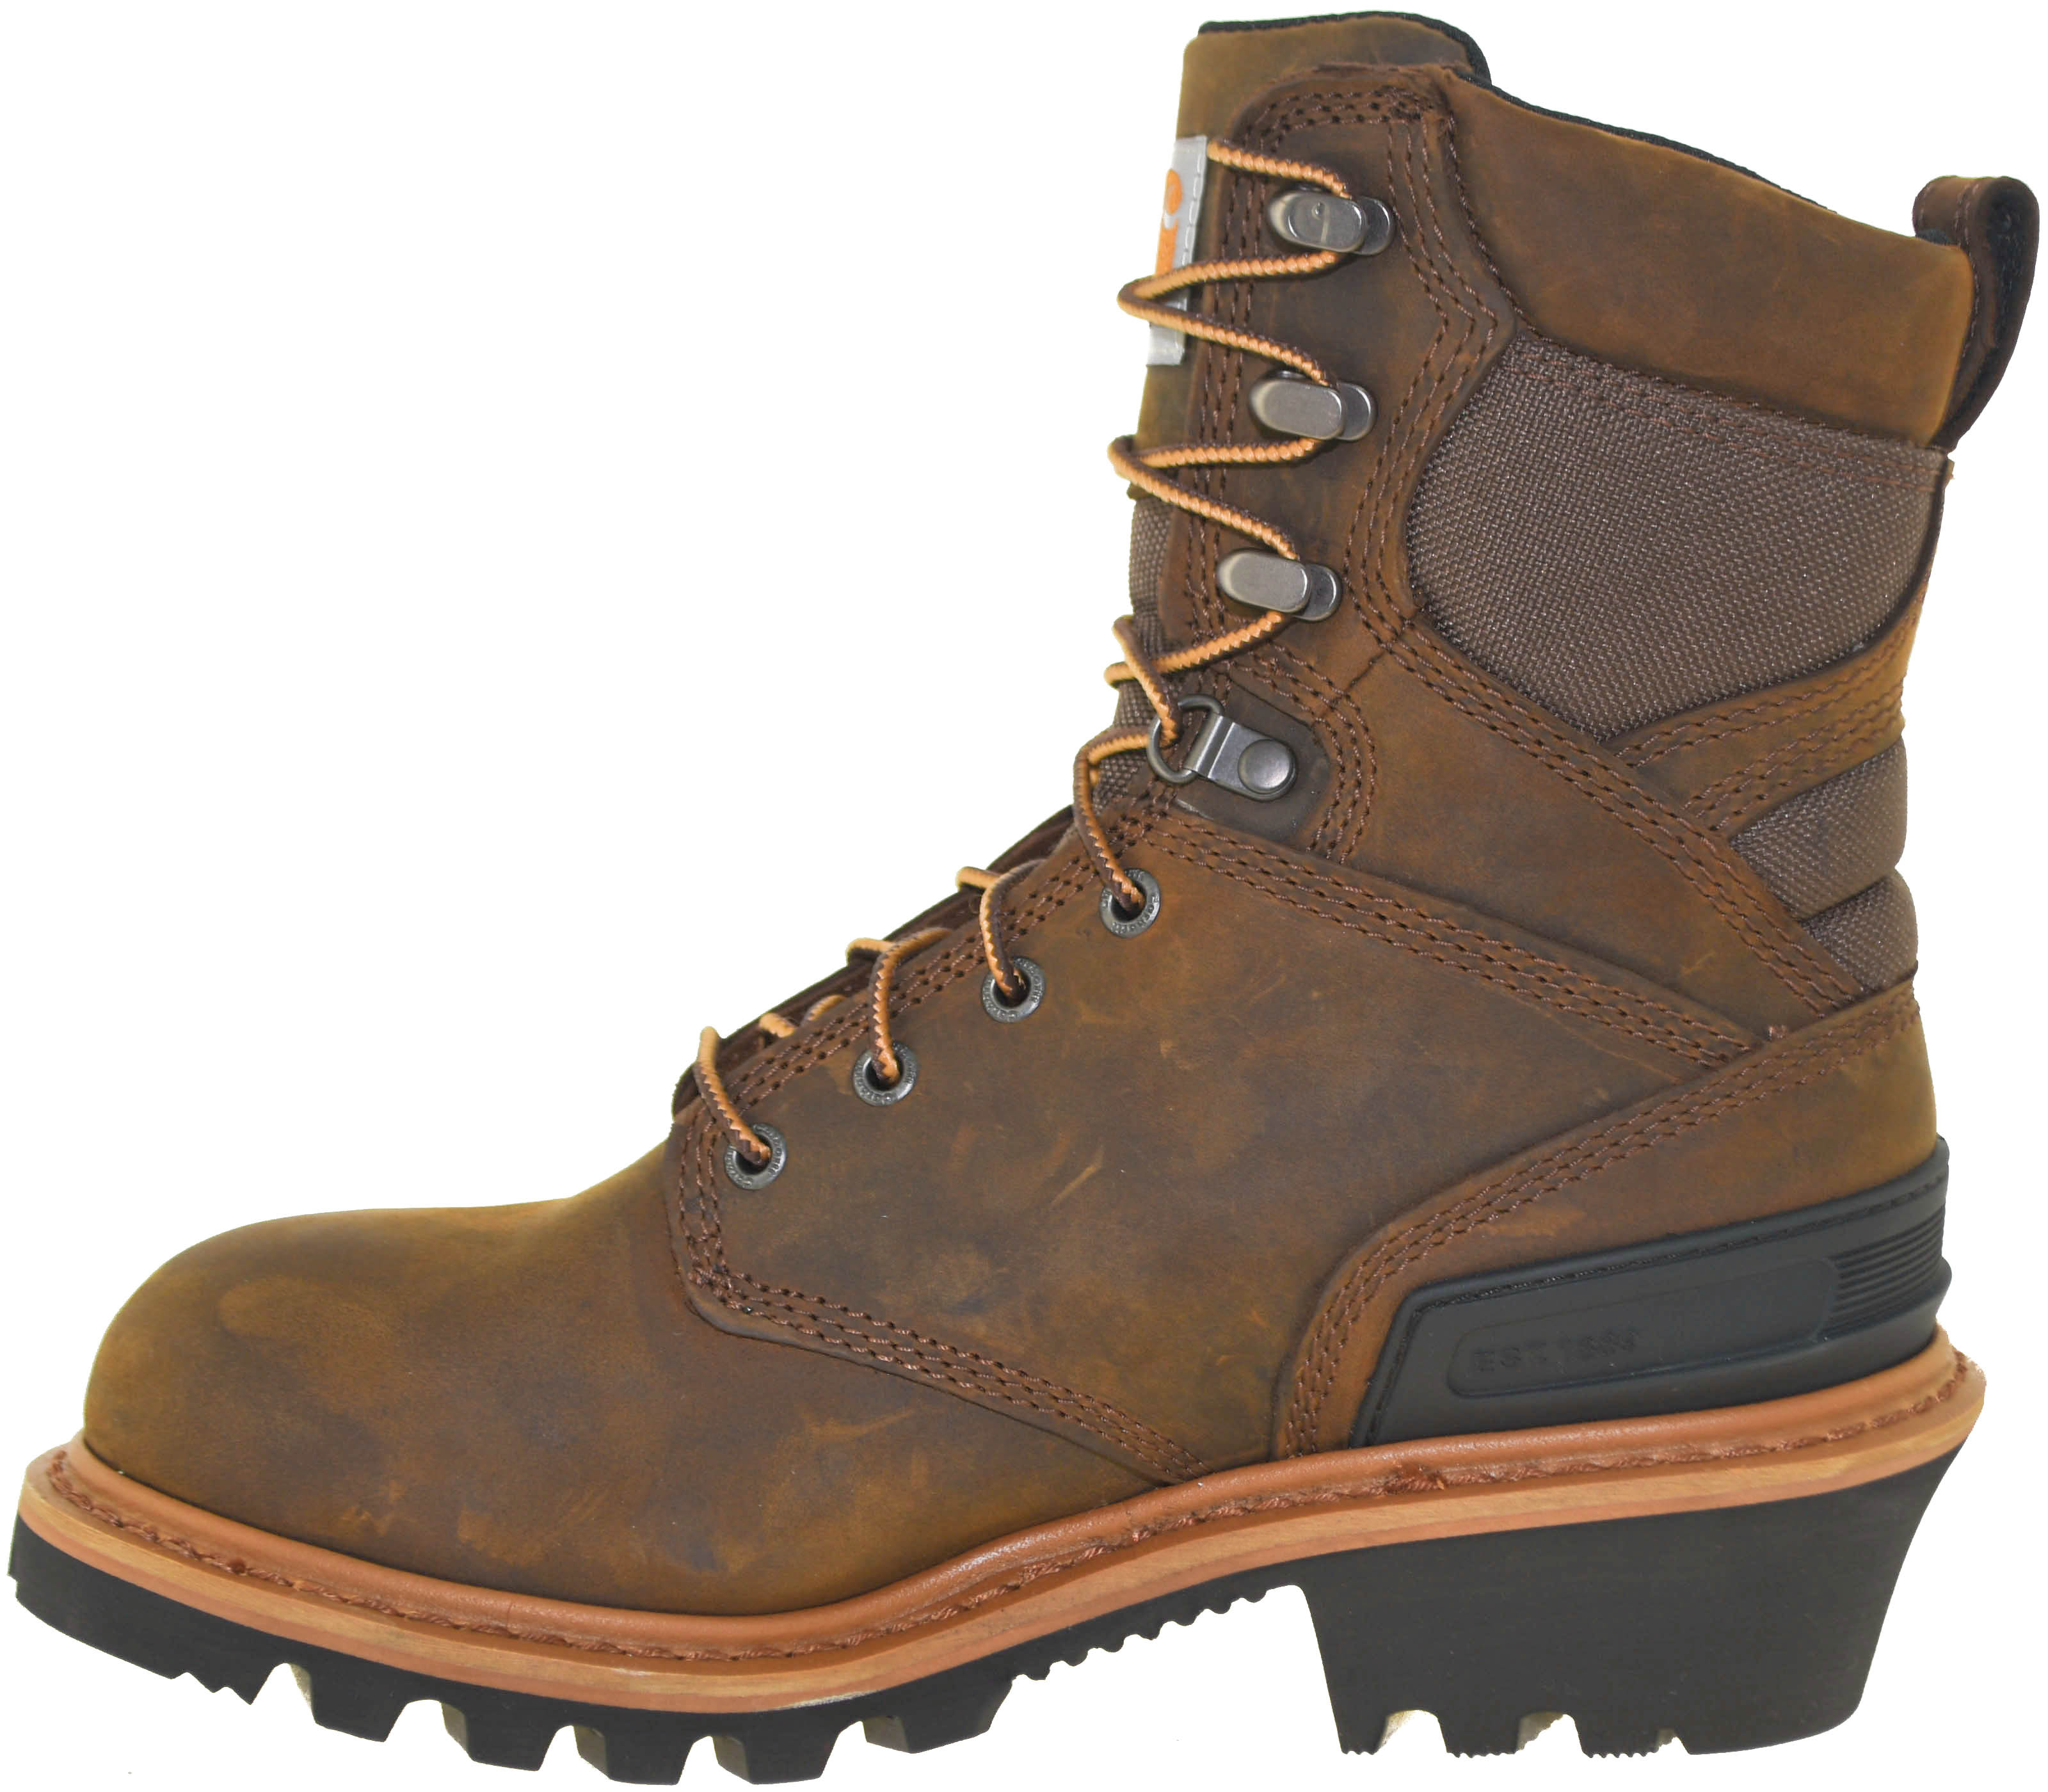 carhartt 8 logger boots